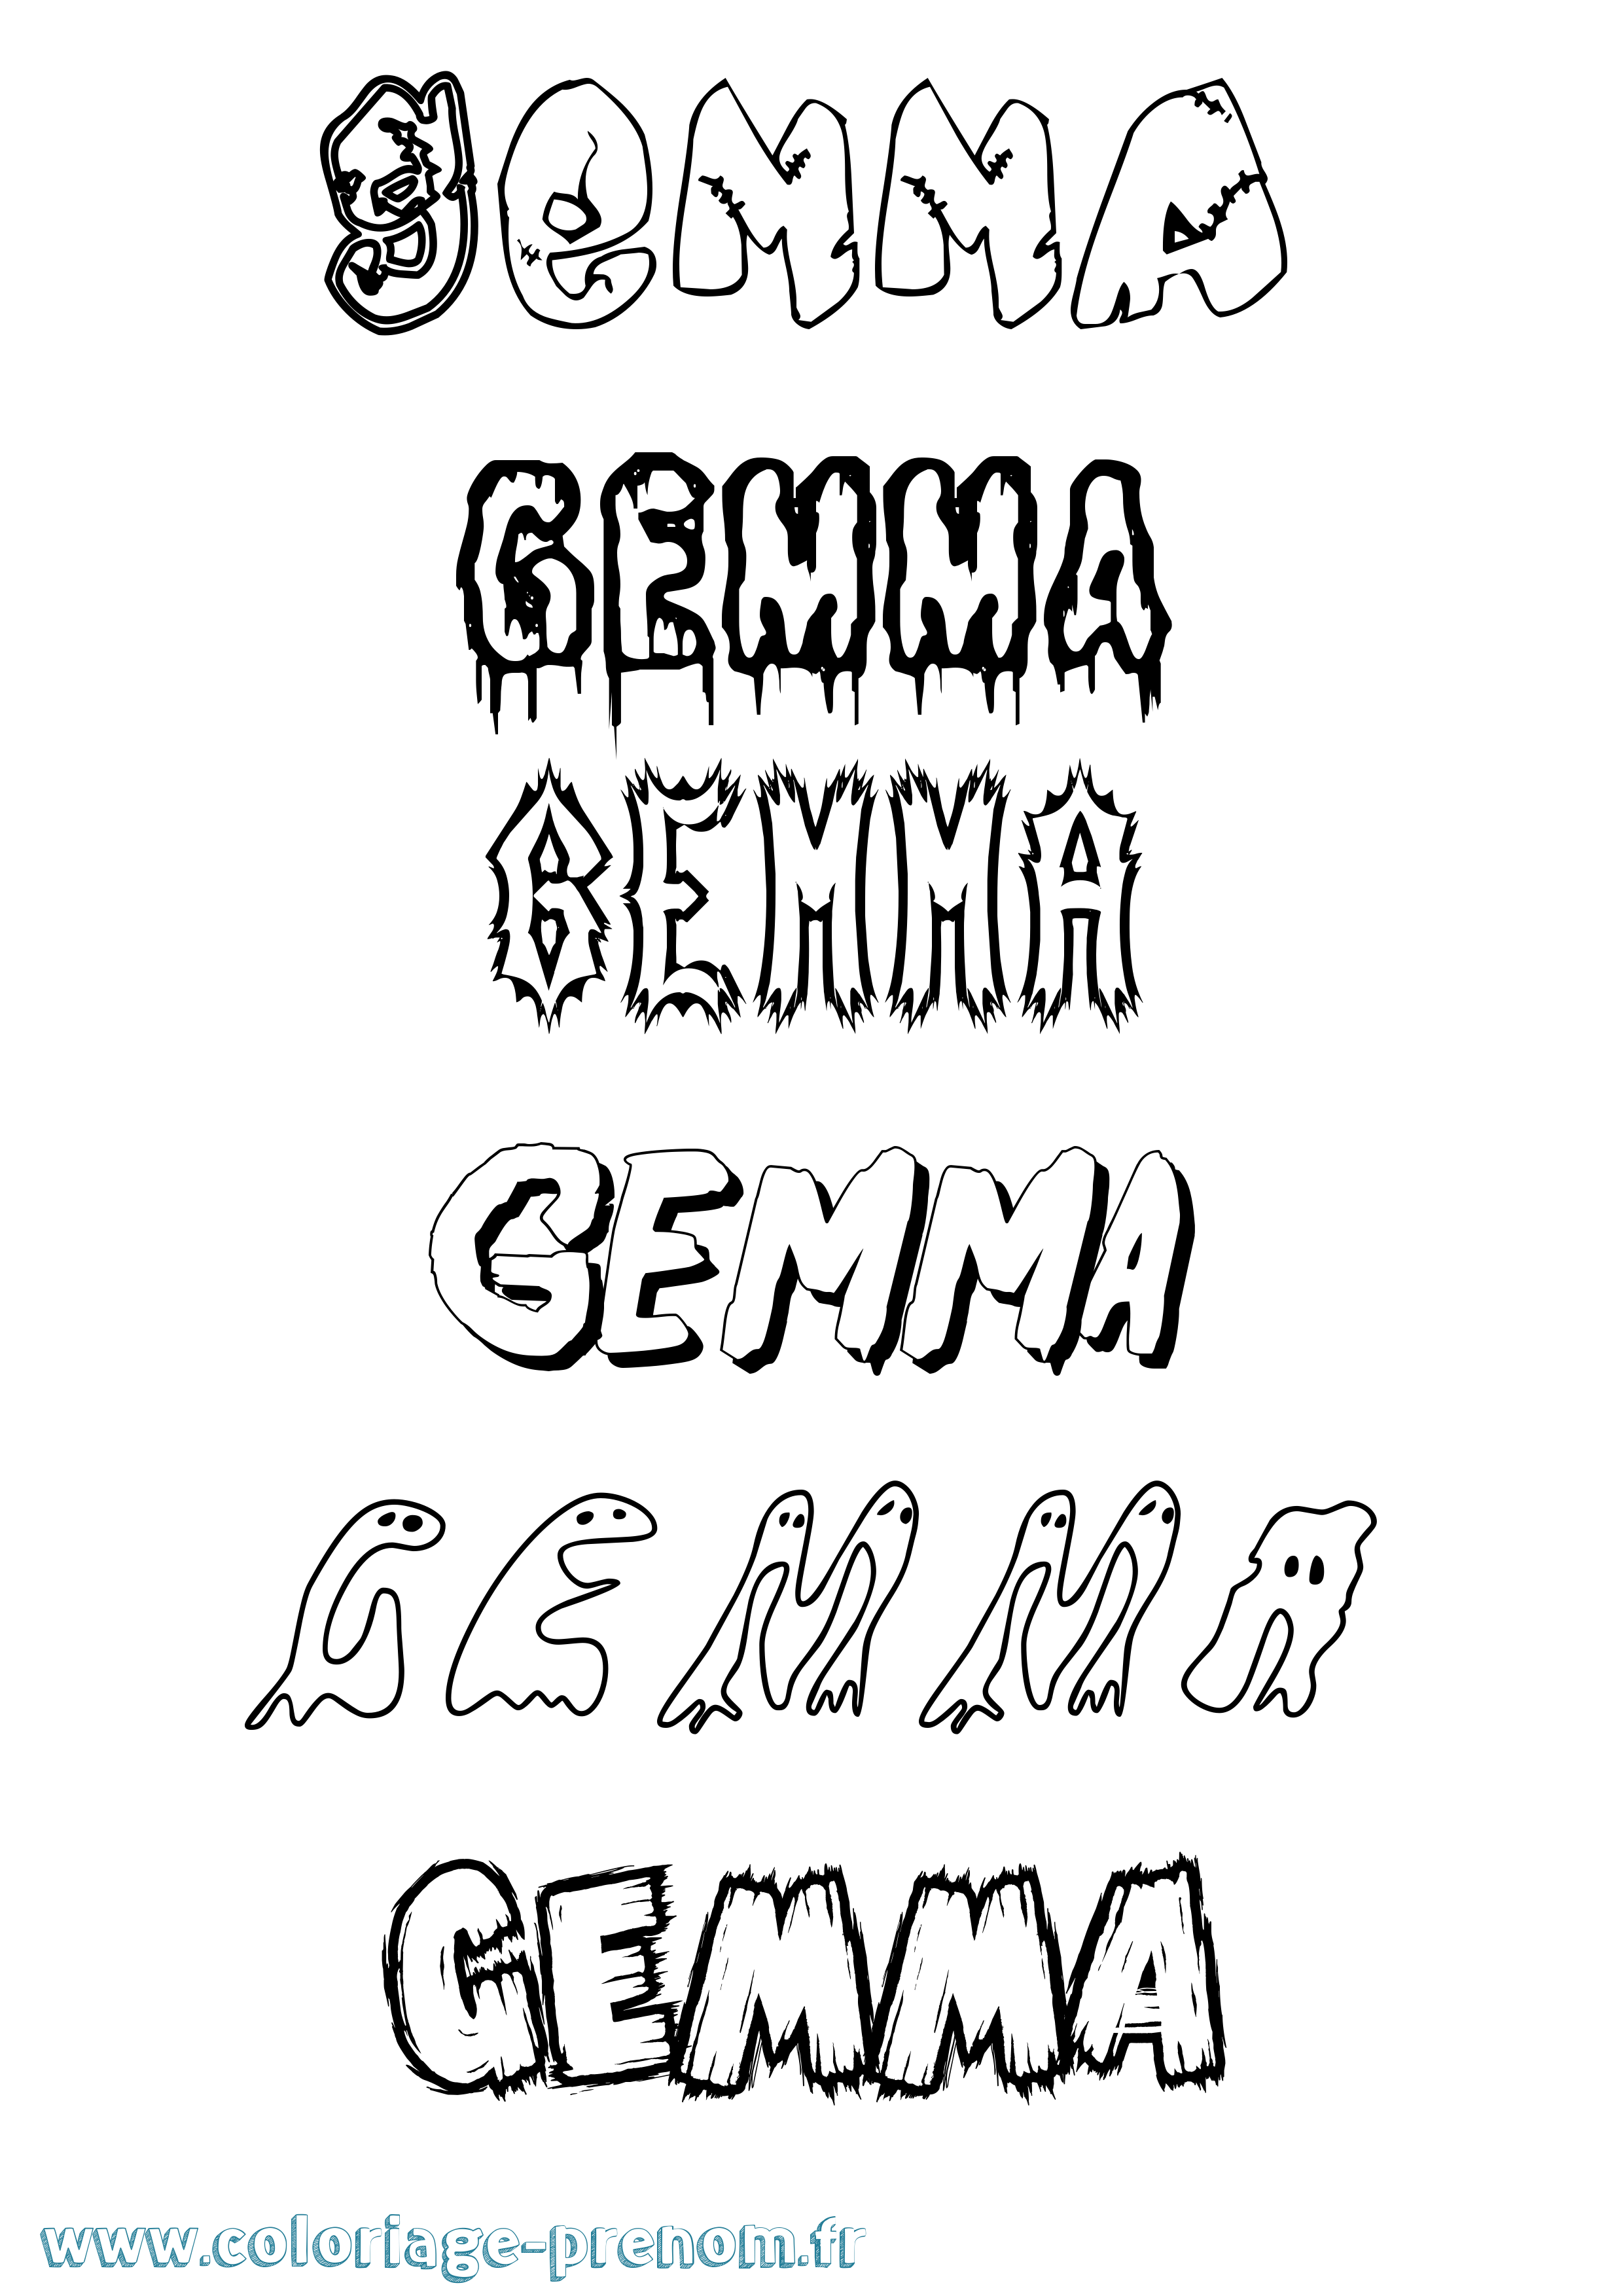 Coloriage prénom Gemma Frisson